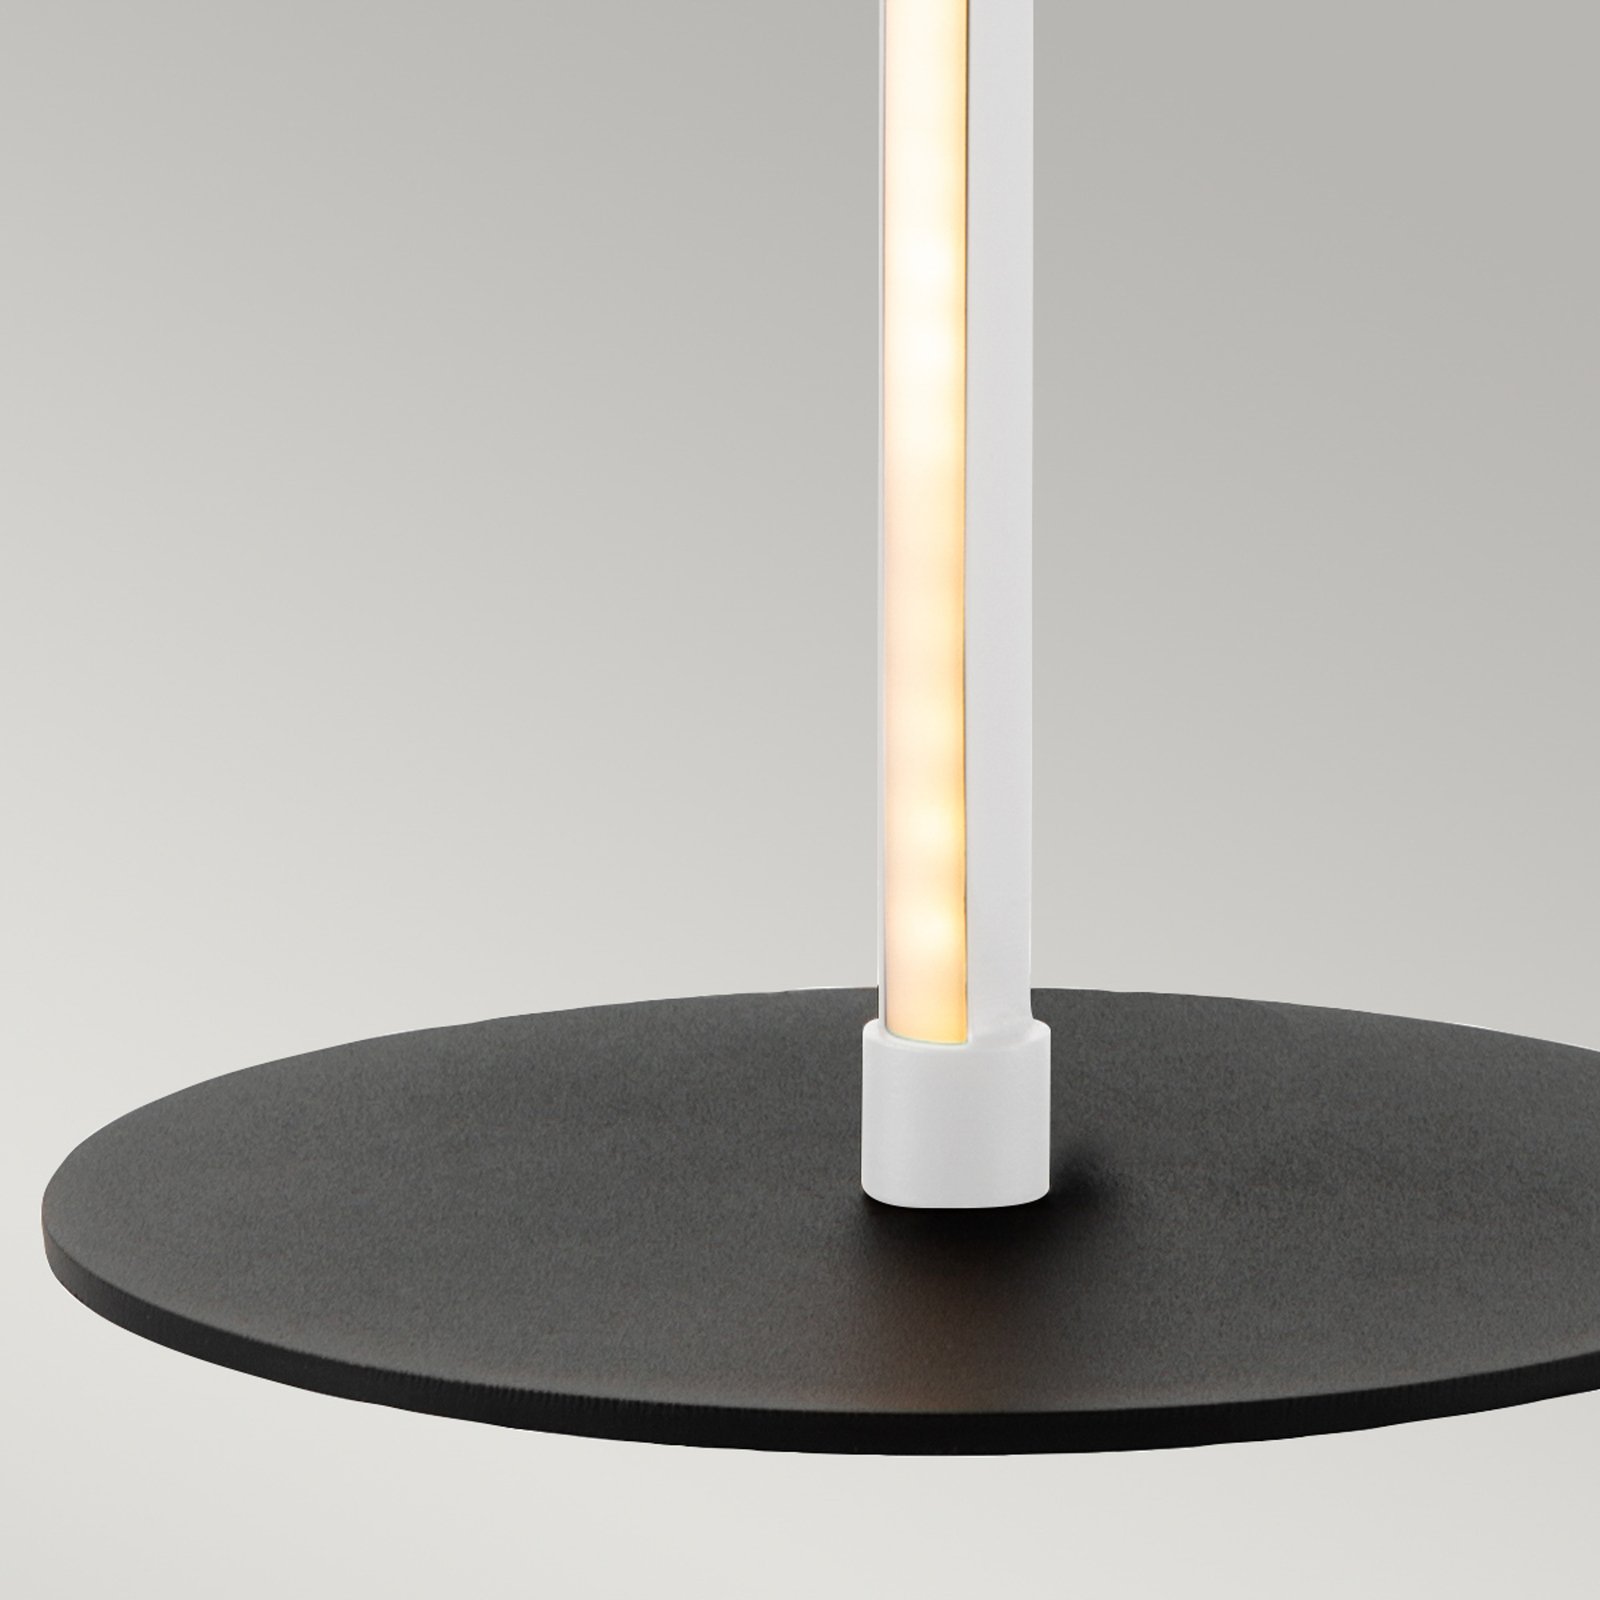 Lampa stołowa LED Flamingo, biała, metal, 50 cm wysokości